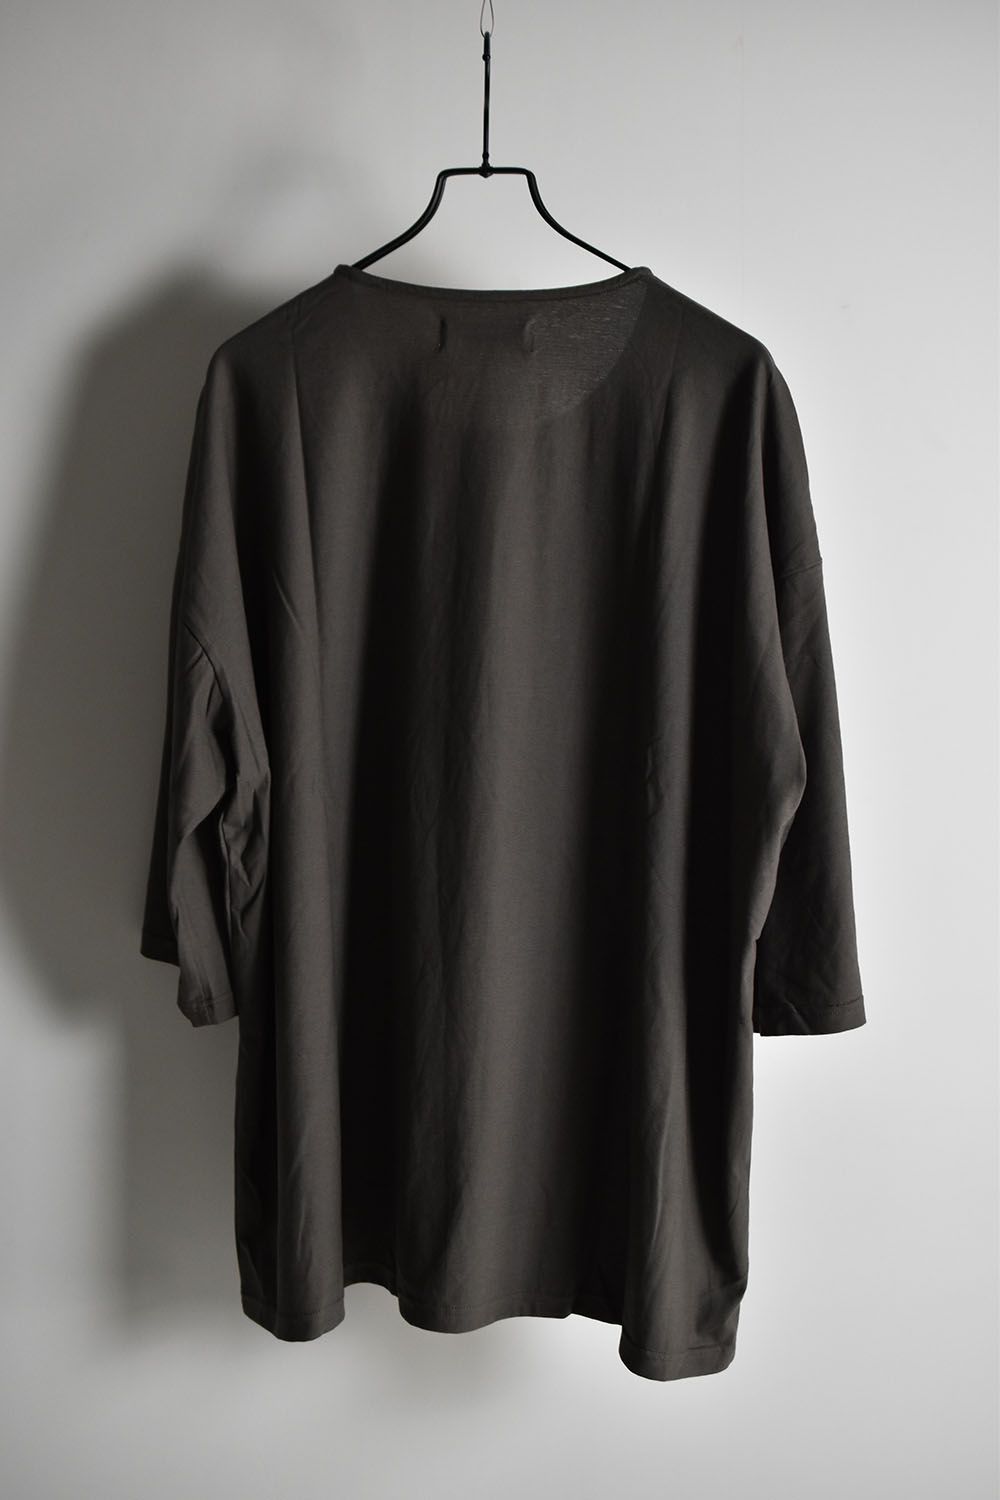 Loose Fit M/S T-Shirt"Charcoal"ルーズフィットミディアムスリーブTee"チャコール"